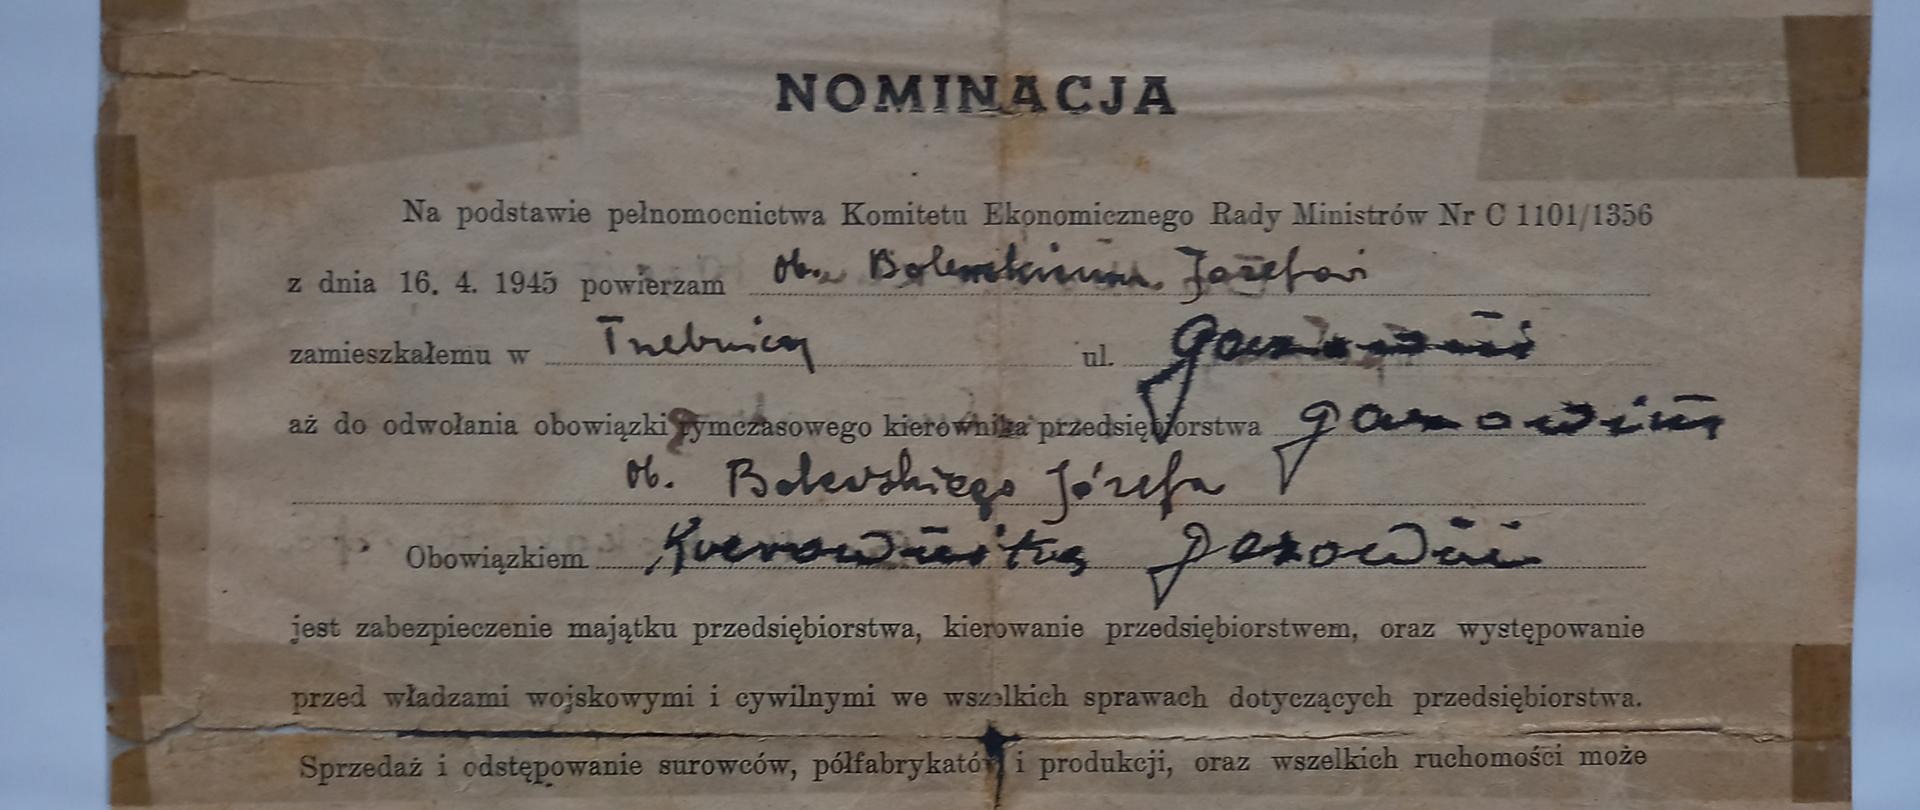 Nominacja Józefa Bolewskiego na p.o. kierownika gazowni